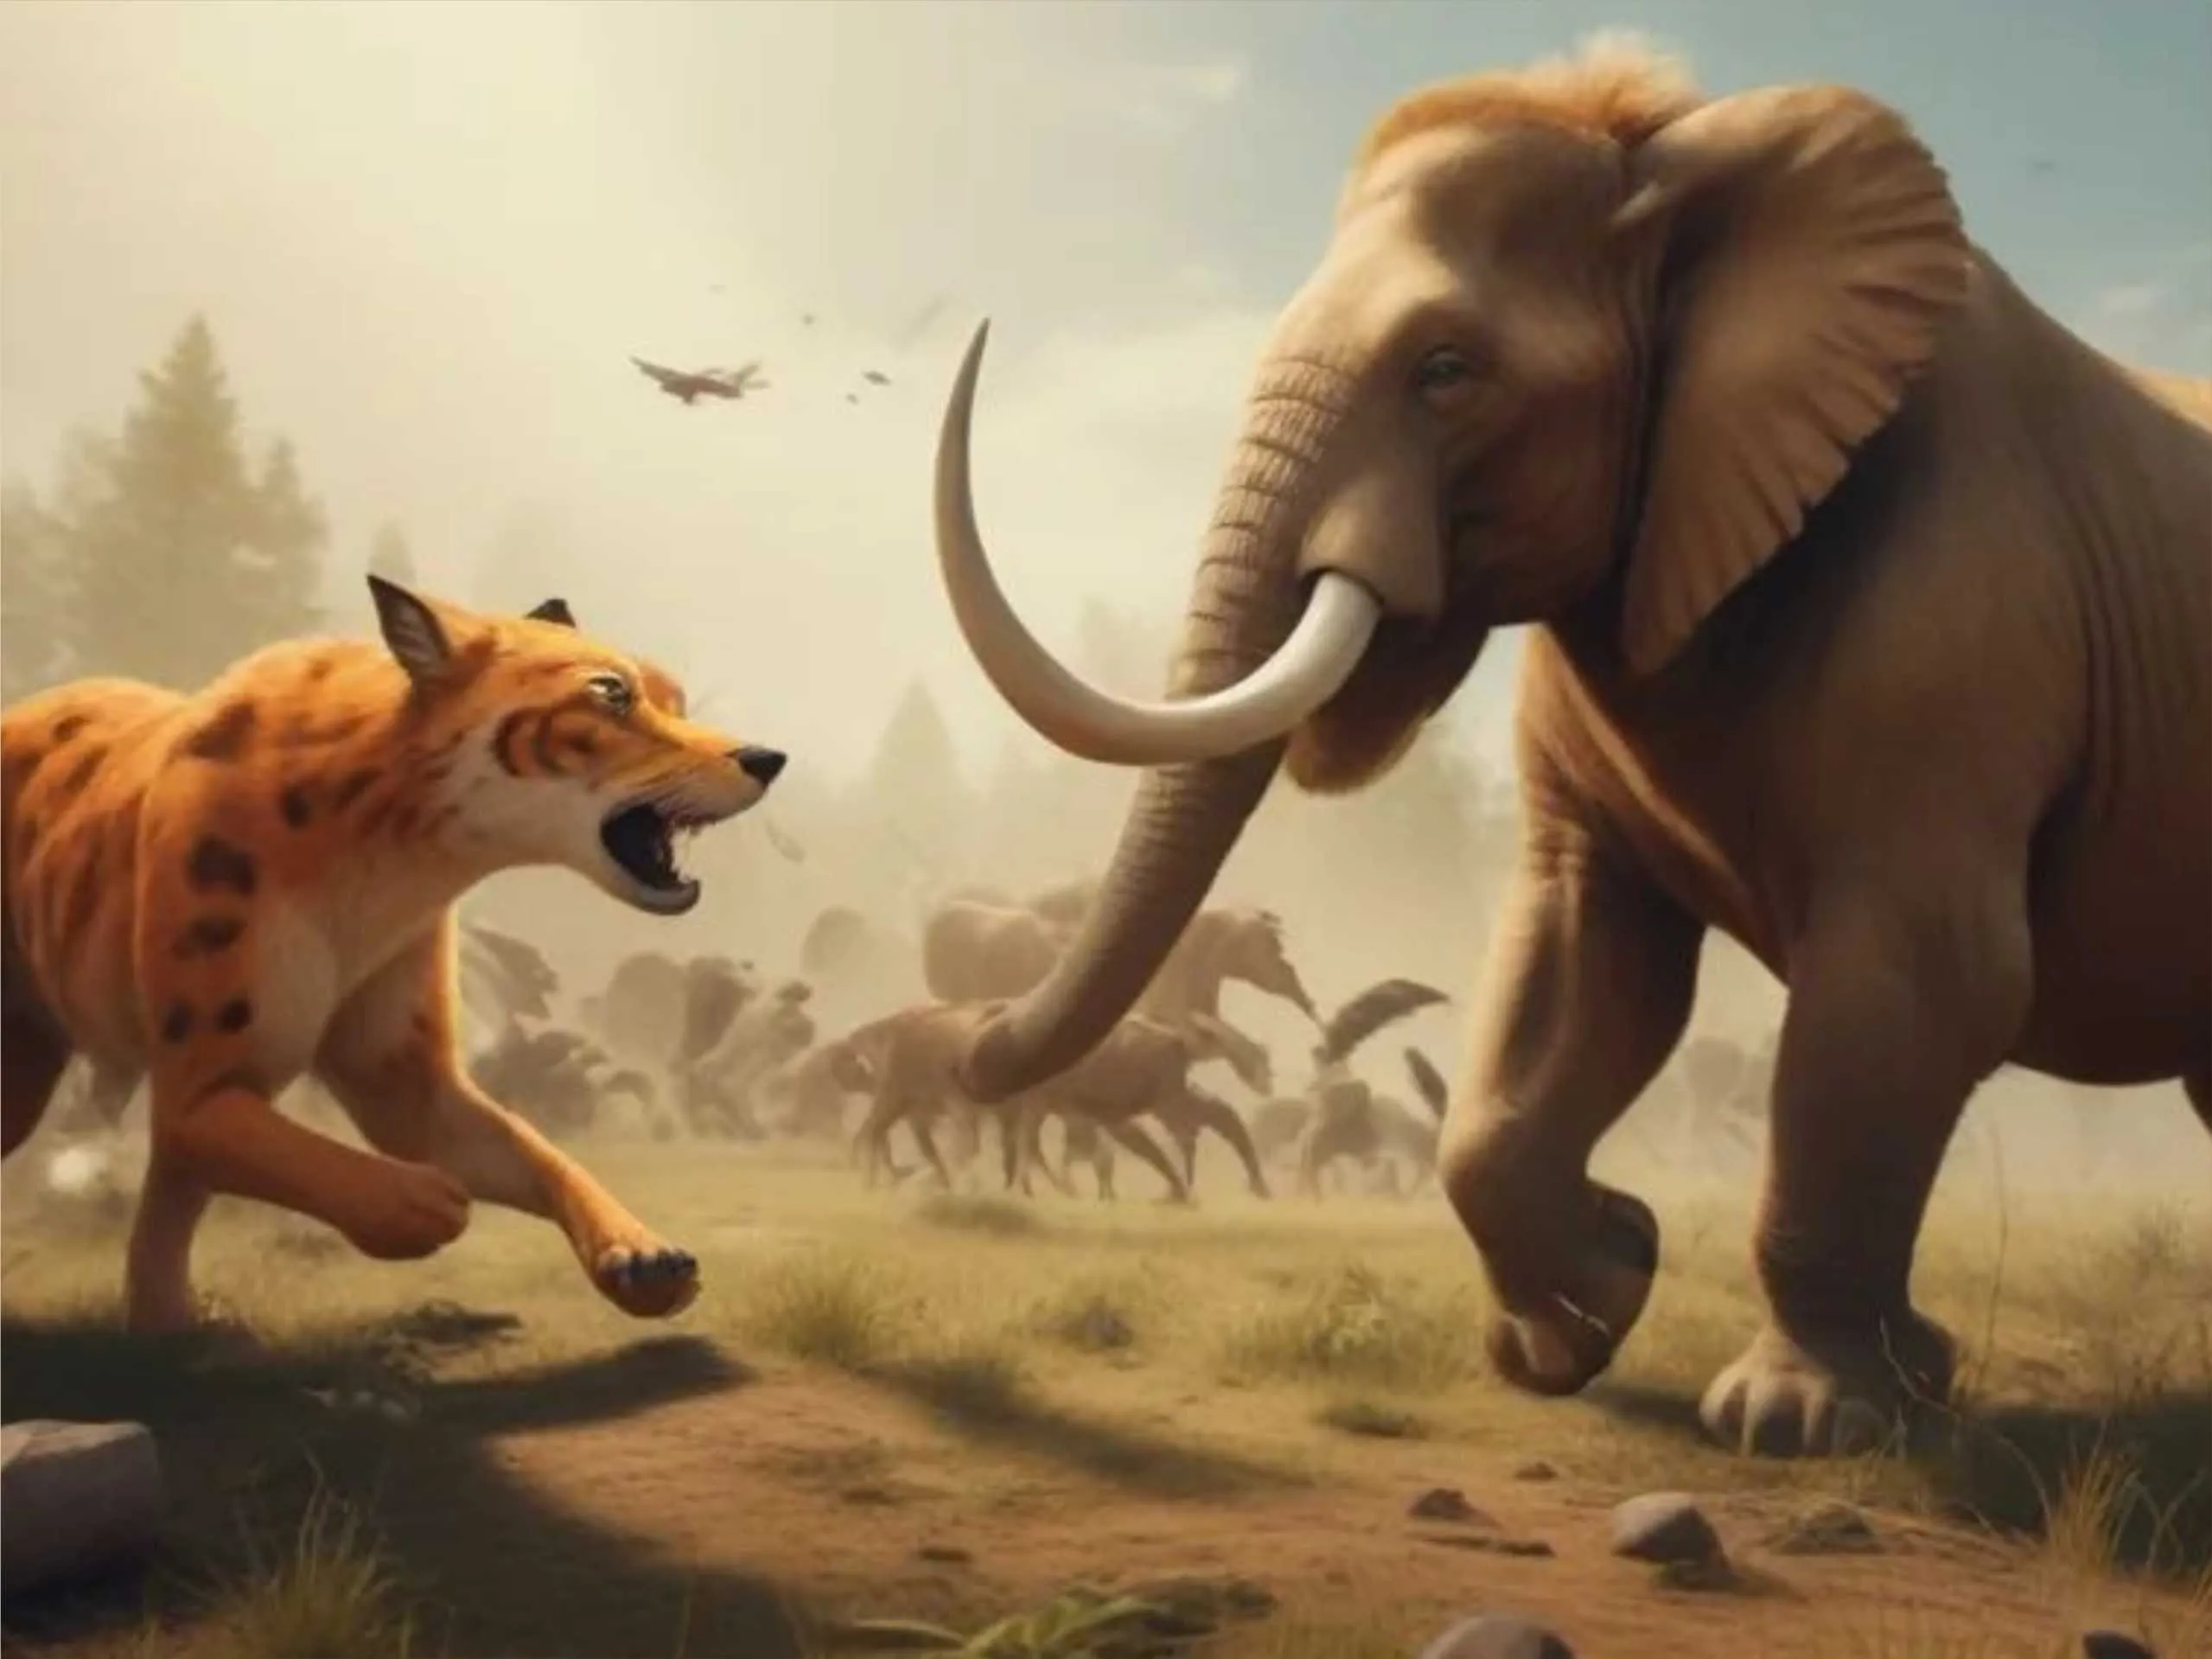 Elephant fighting in battlefield cartoon image